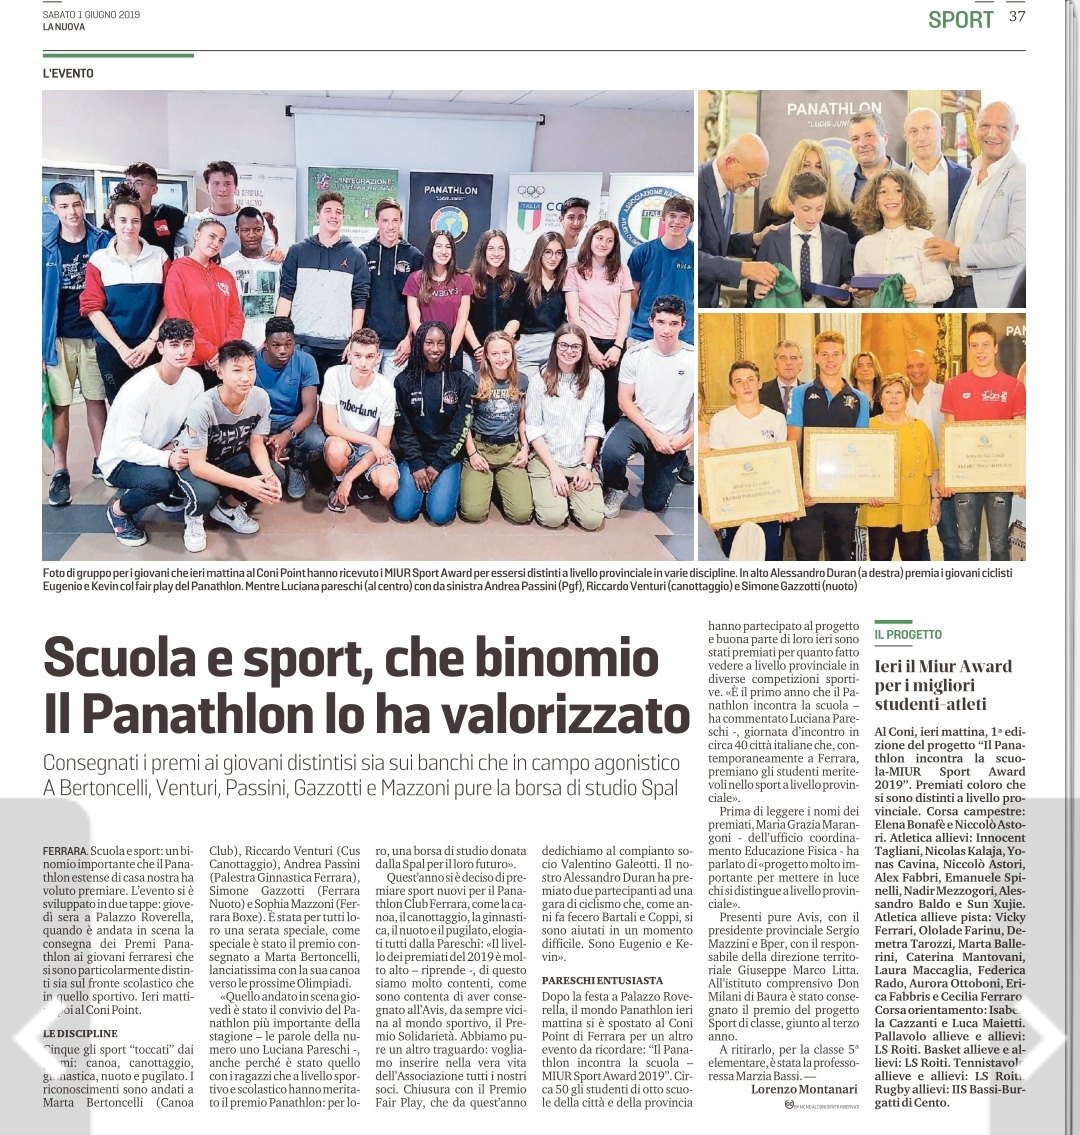 Sulle pagine del giornale la premiazione del progetto Panathlon - MIUS